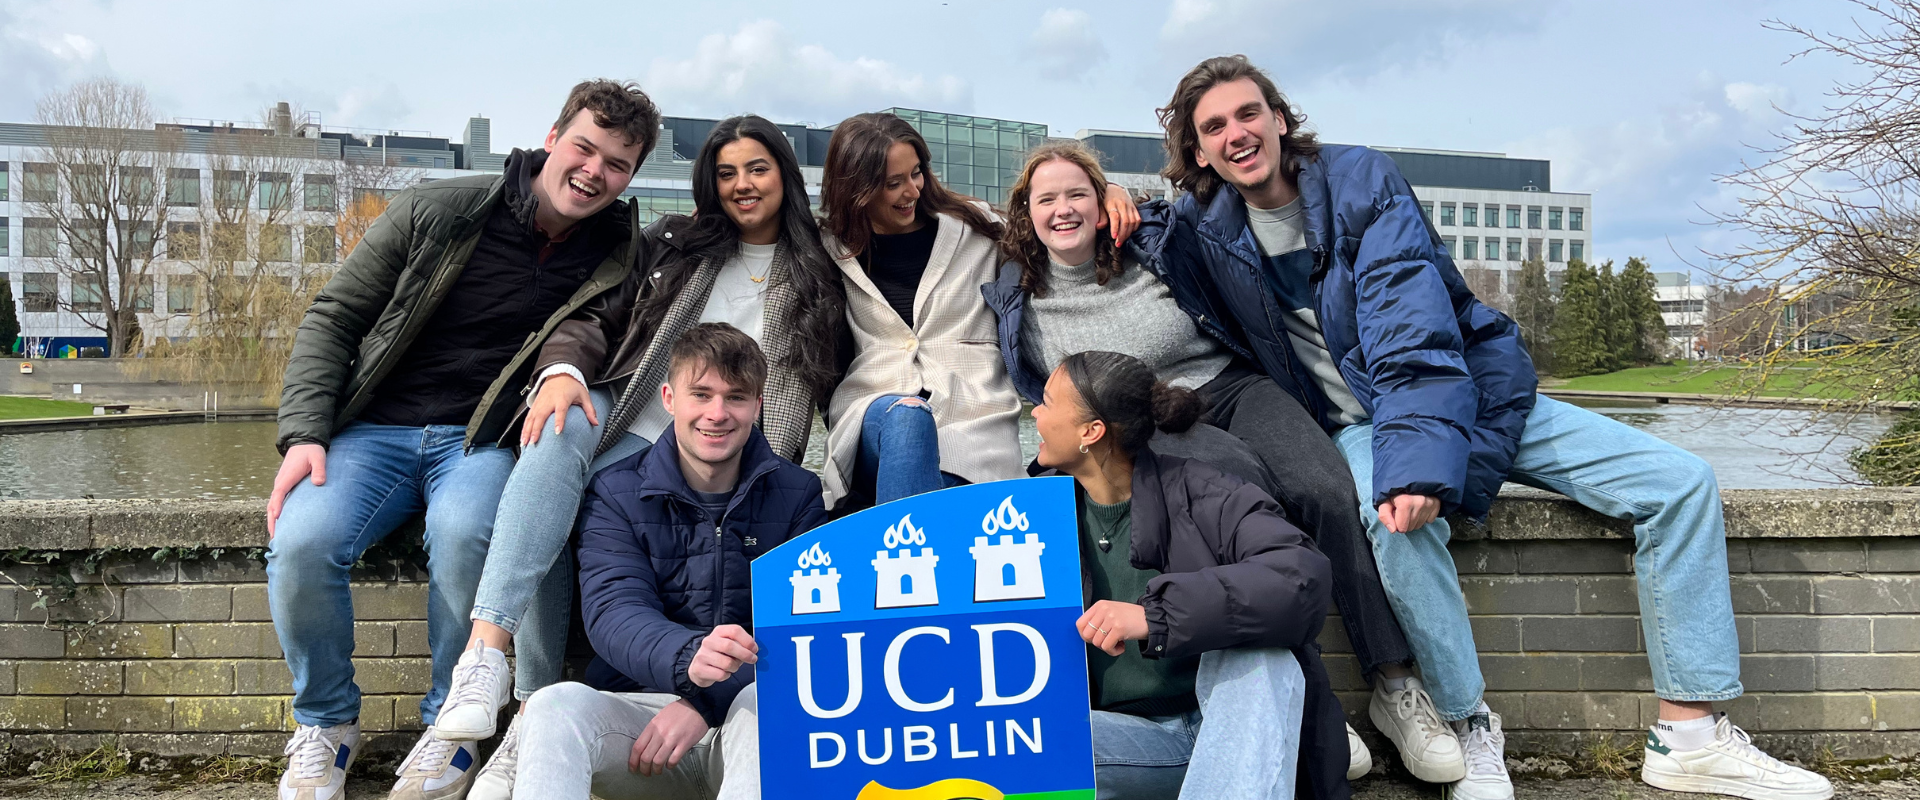 七名学生在科学大楼前用UCD标志道具拍照。